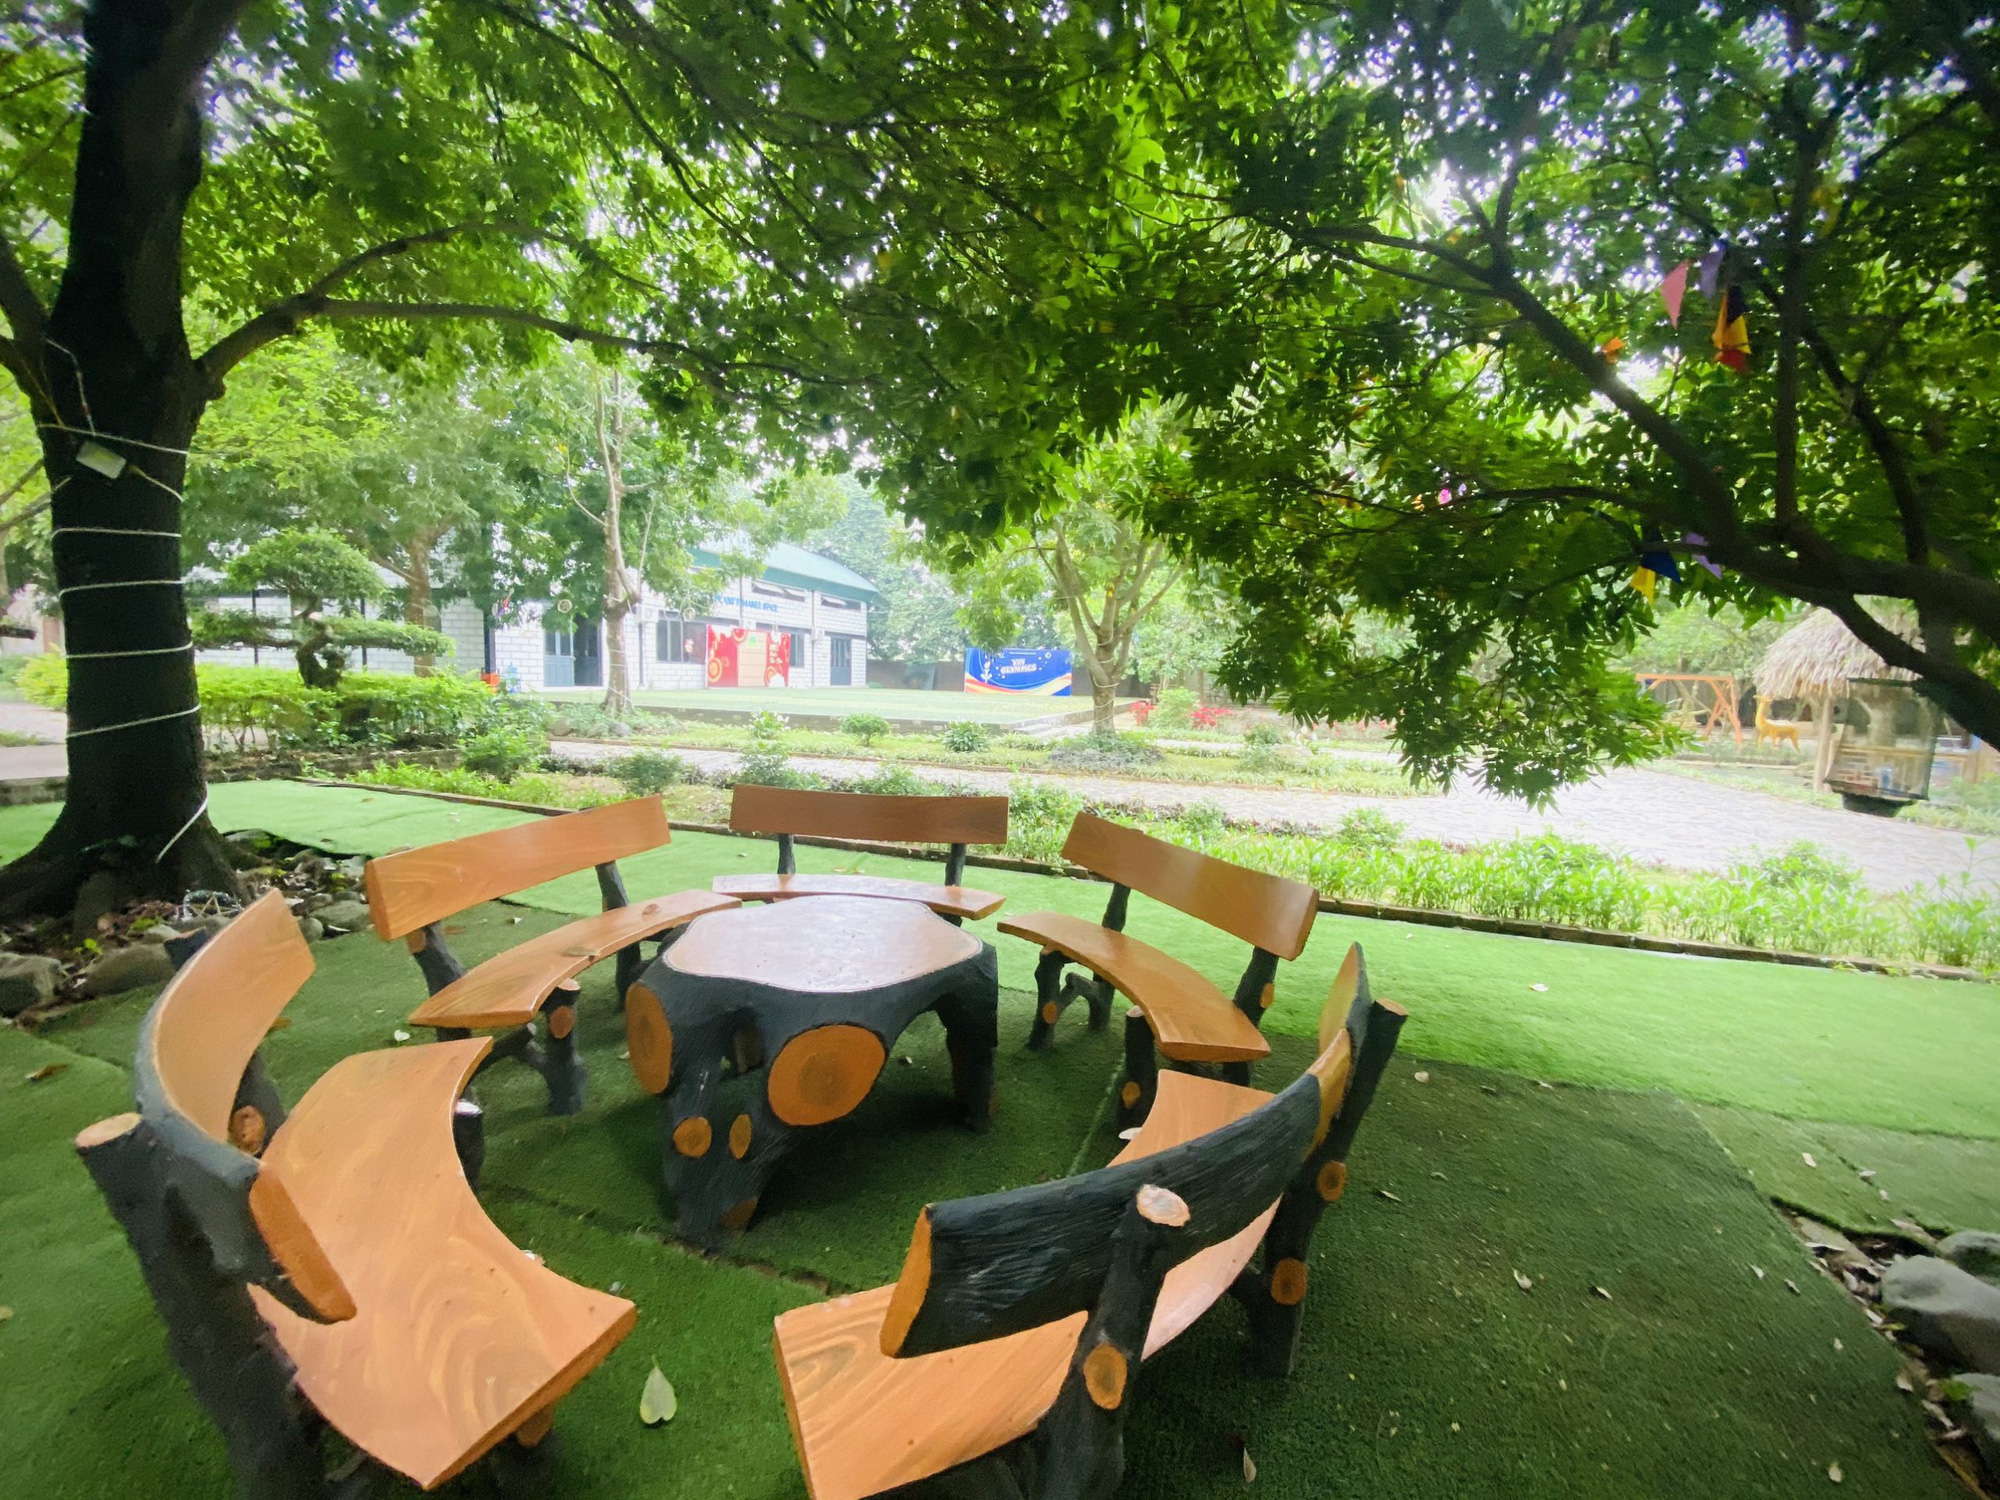 Tổng hợp 40 địa điểm vui chơi cho trẻ quanh Hà Nội: Trải nghiệm thiên nhiên, dã ngoại, khu vui chơi sáng tạo - giáo dục sớm cho bé - Ảnh 6.